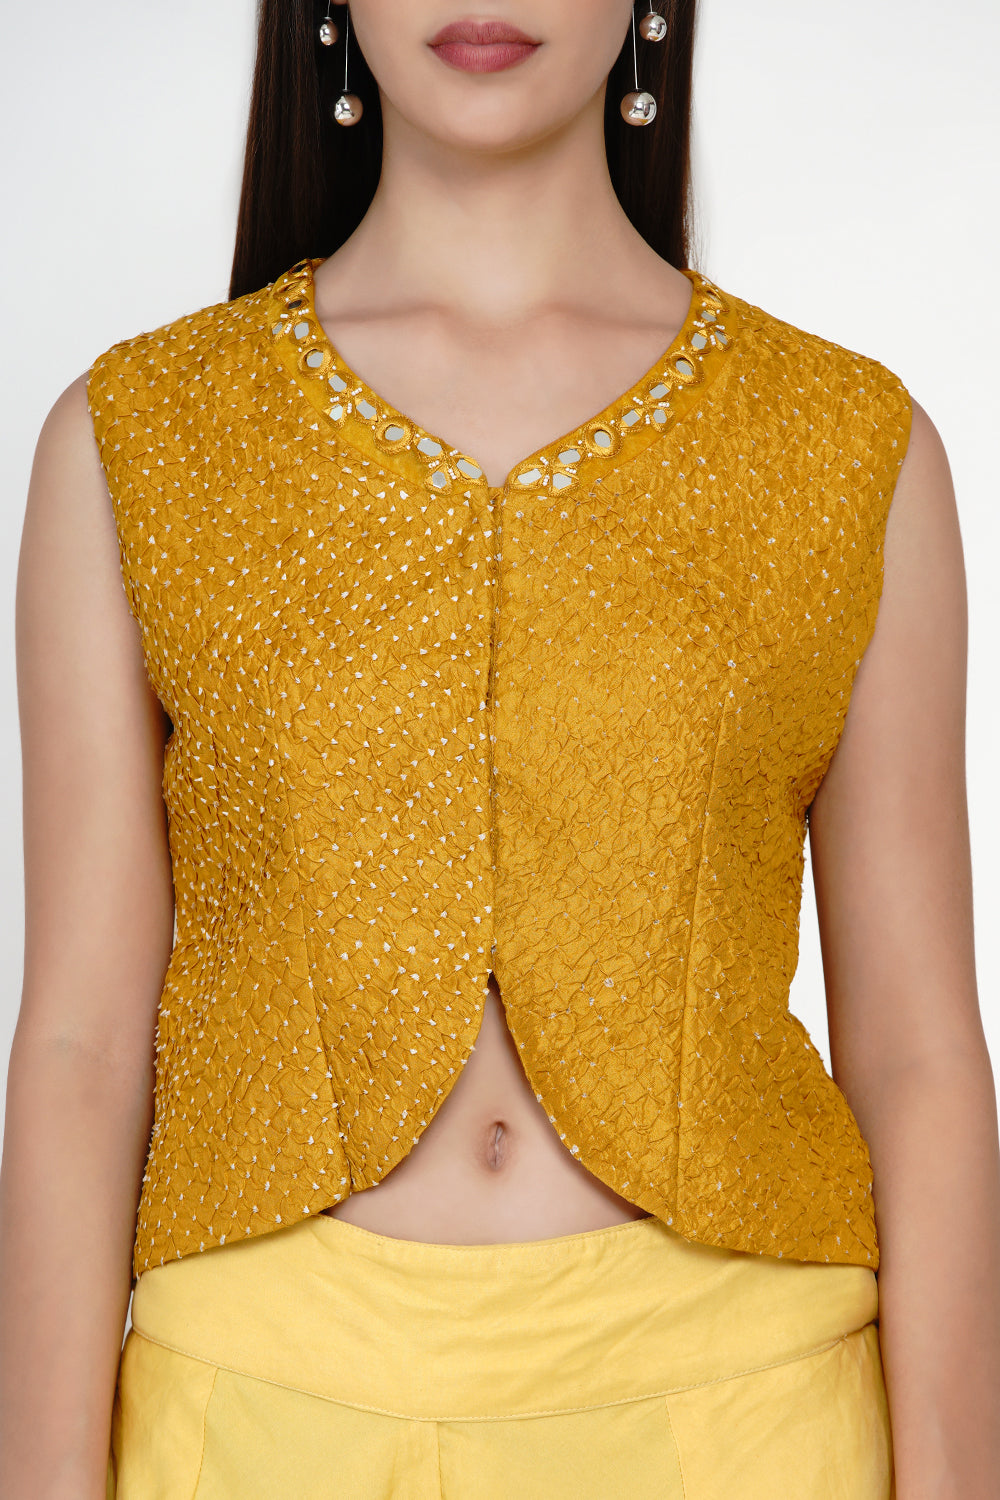 Yellow Crushed Bandhani Mirrowork Jacket Style Top